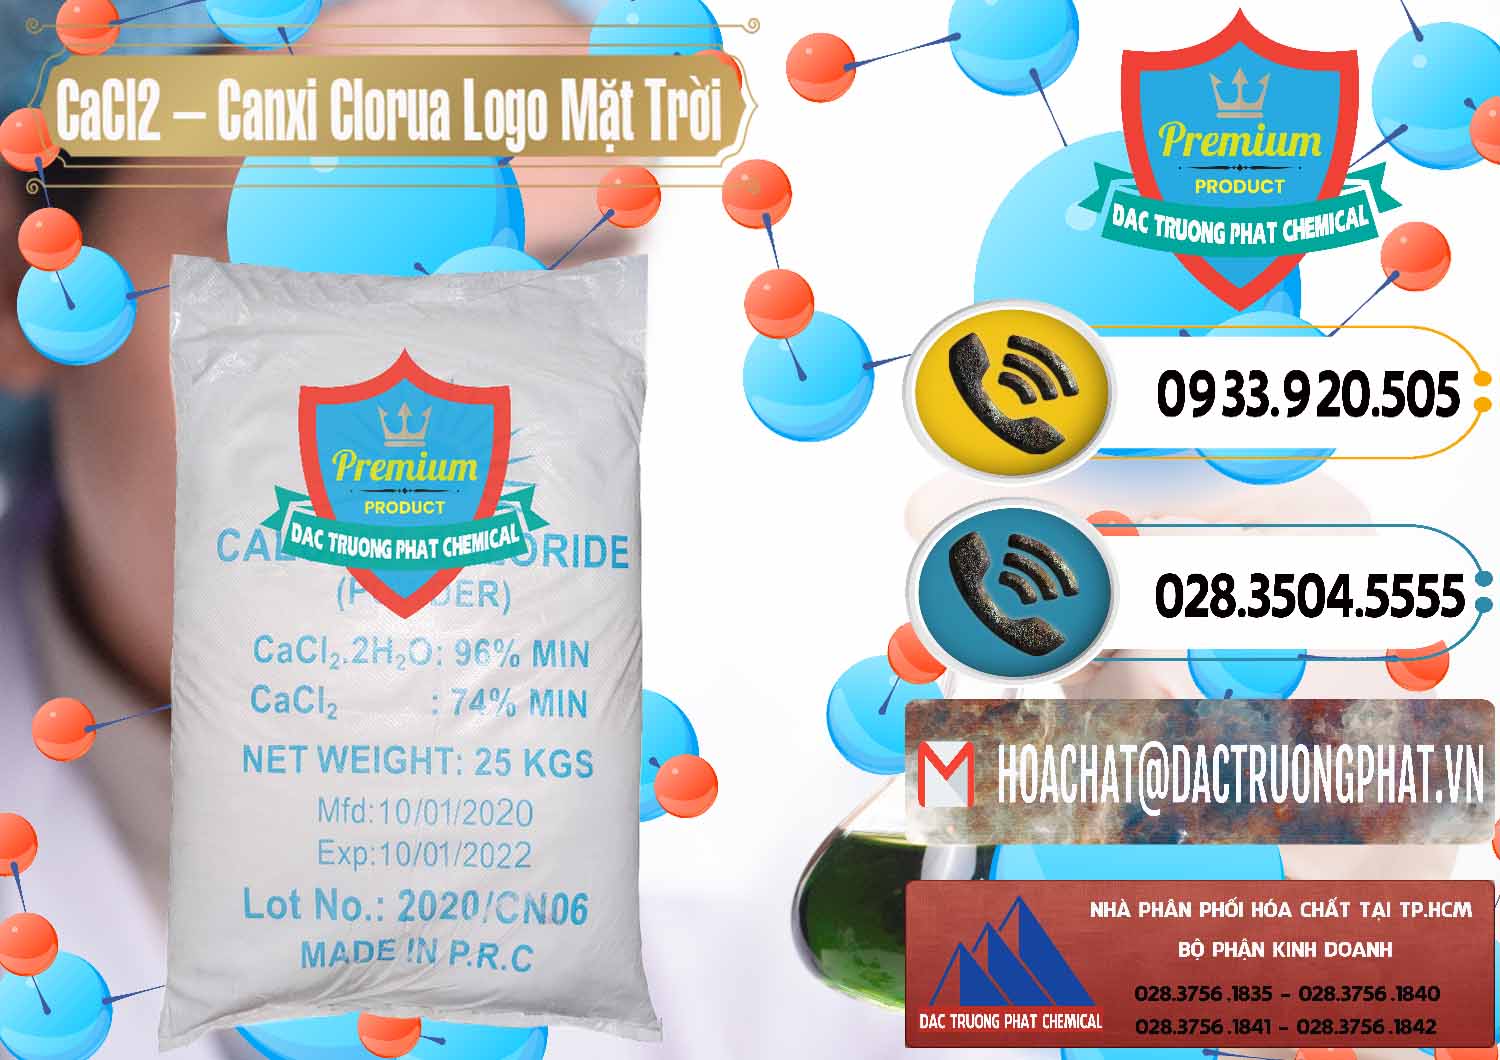 Cty kinh doanh - bán CaCl2 – Canxi Clorua 96% Logo Mặt Trời Trung Quốc China - 0041 - Công ty chuyên cung ứng ( phân phối ) hóa chất tại TP.HCM - hoachatdetnhuom.vn